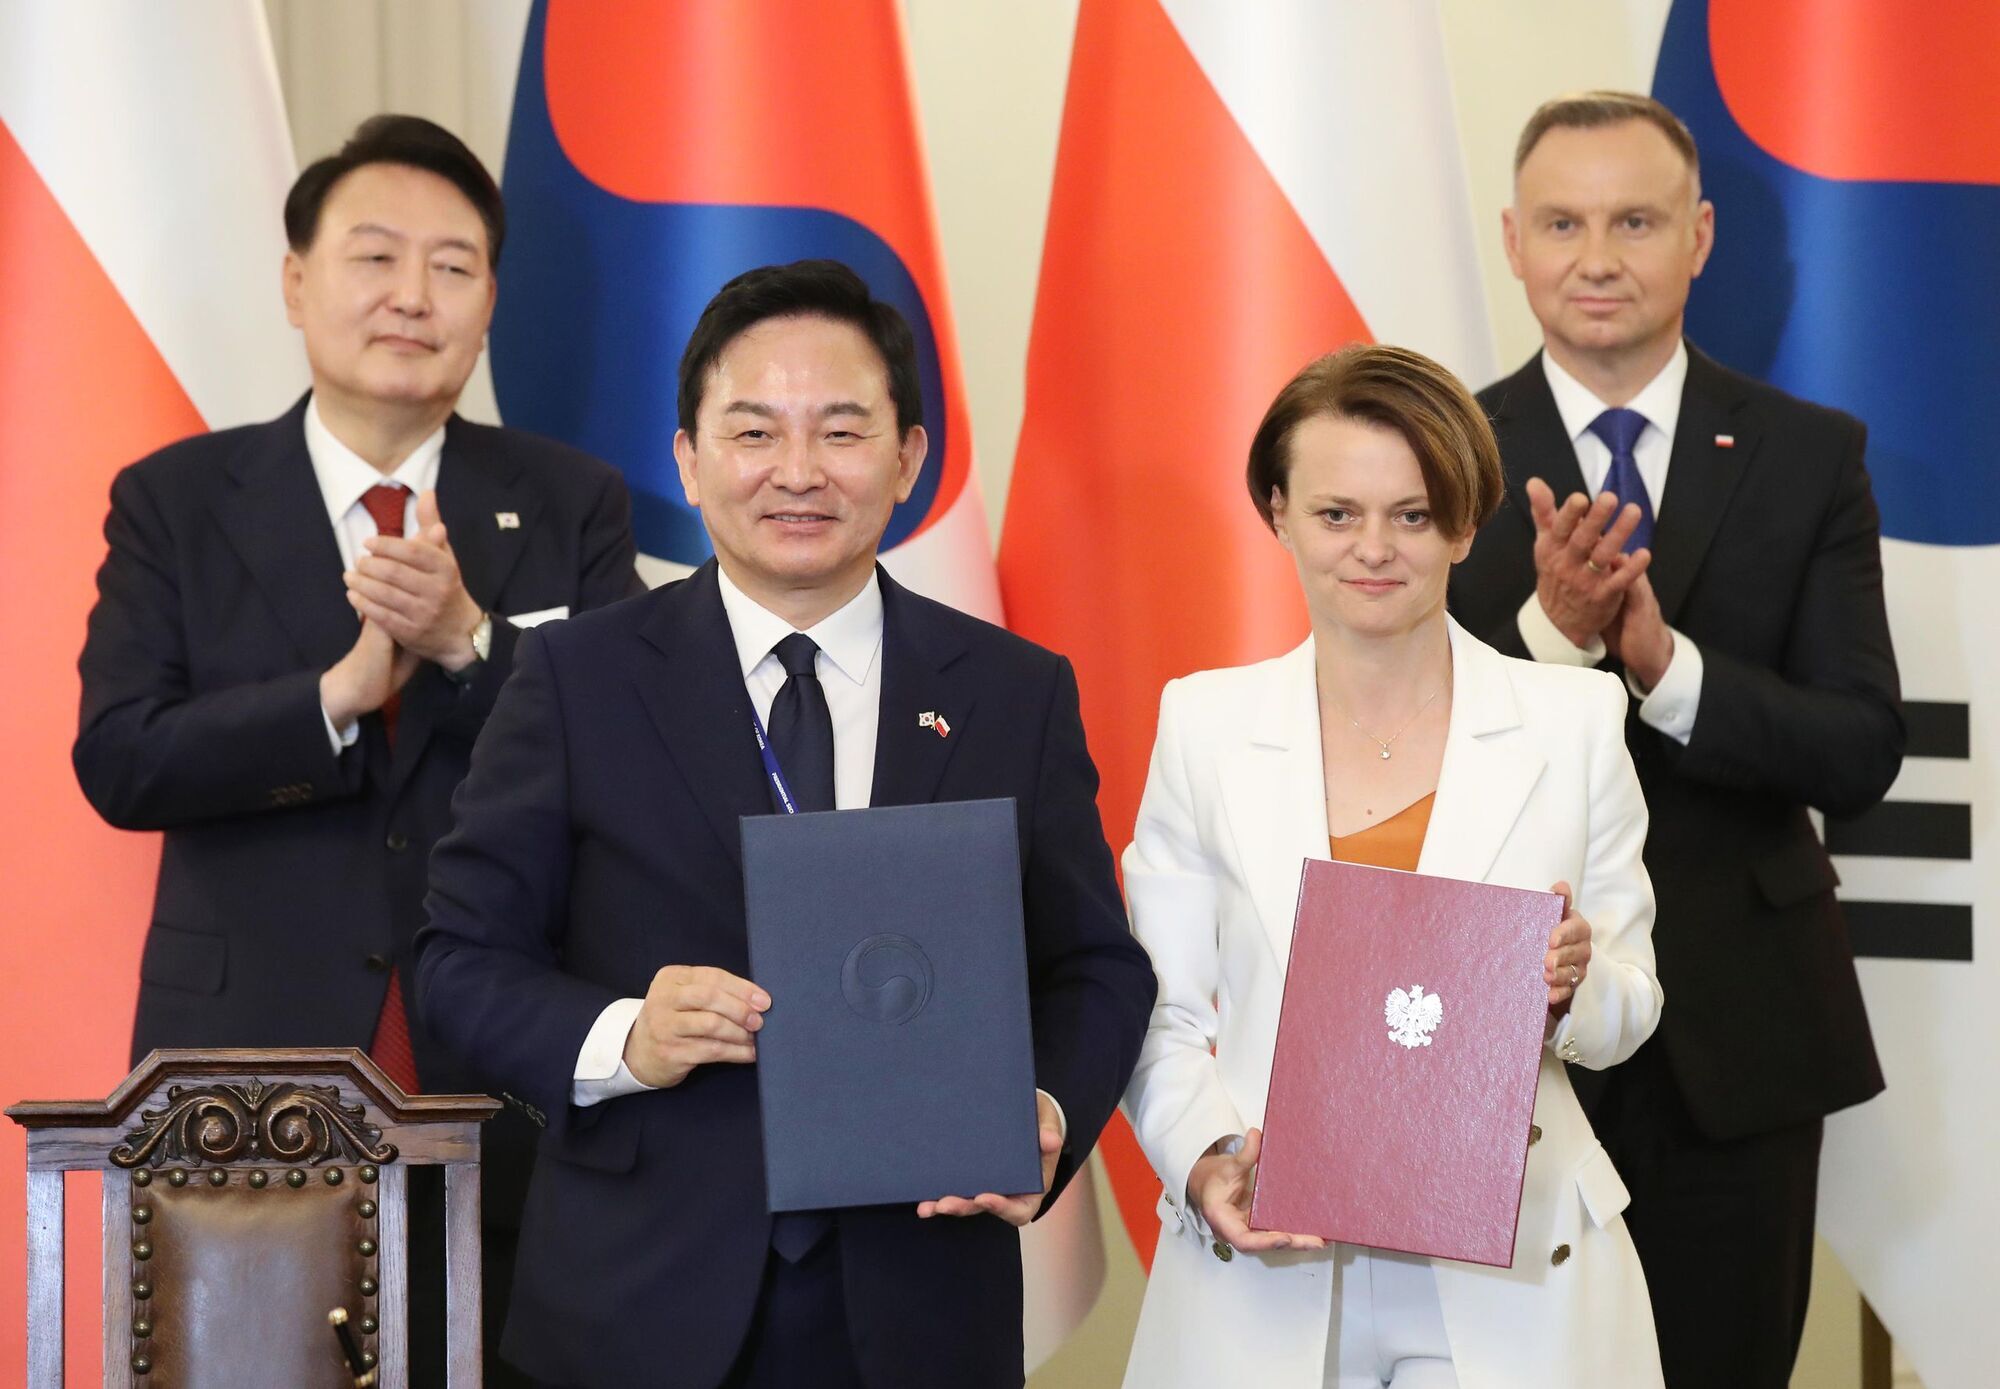 Польща і Південна Корея домовилися  про співпрацю у відновленні України після війни: підписано меморандум